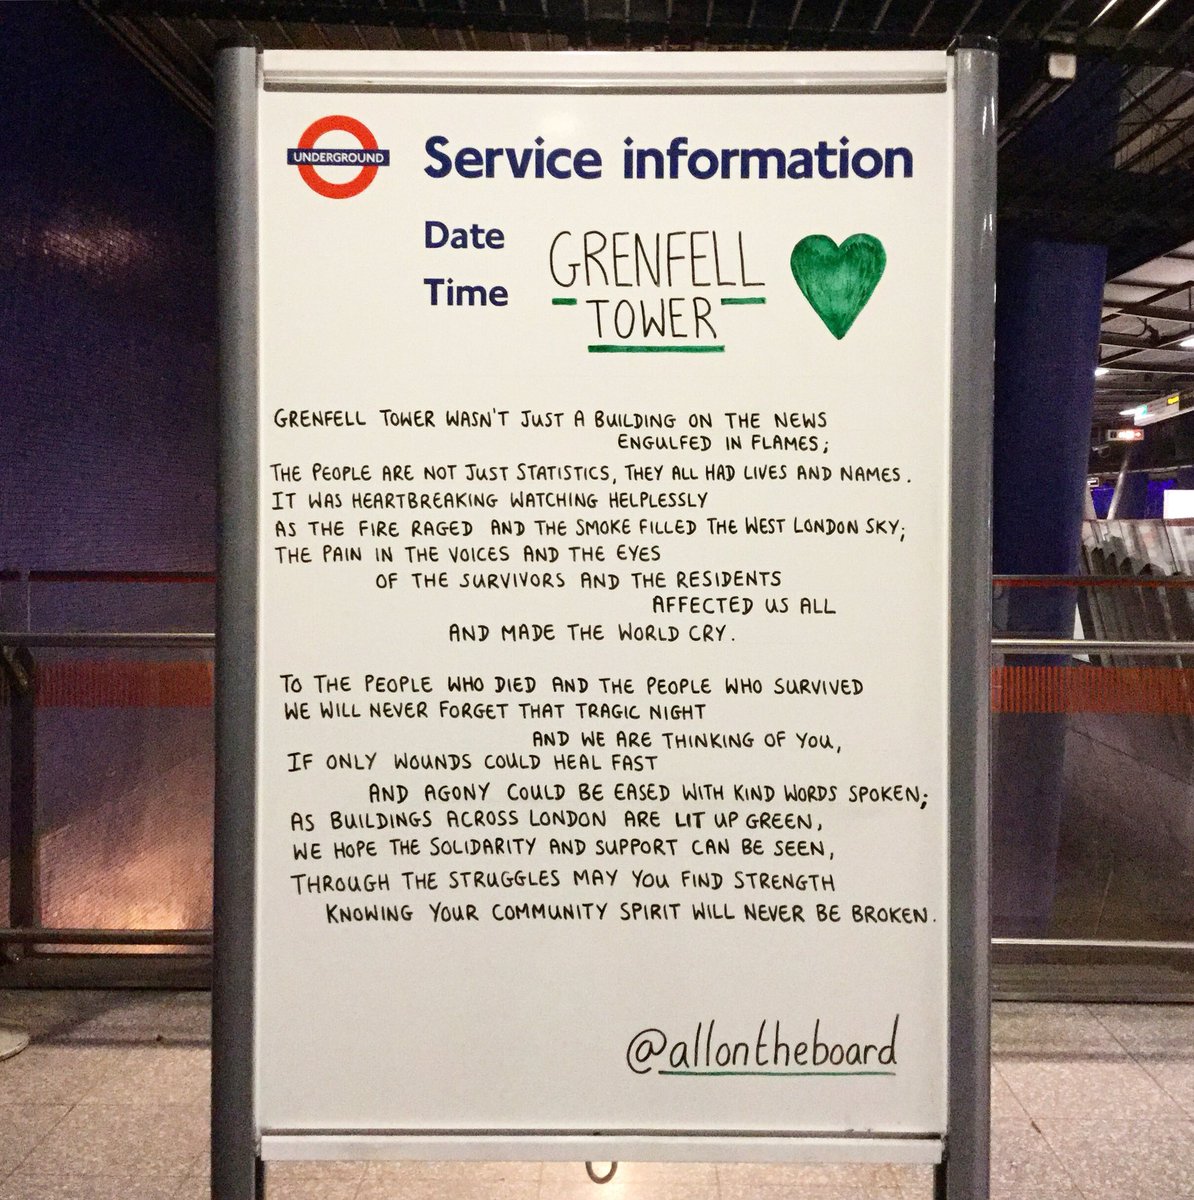 5 years on we remember. 💚

#Grenfell #GrenfellTower #UnitedForGrenfell 
#allontheboard